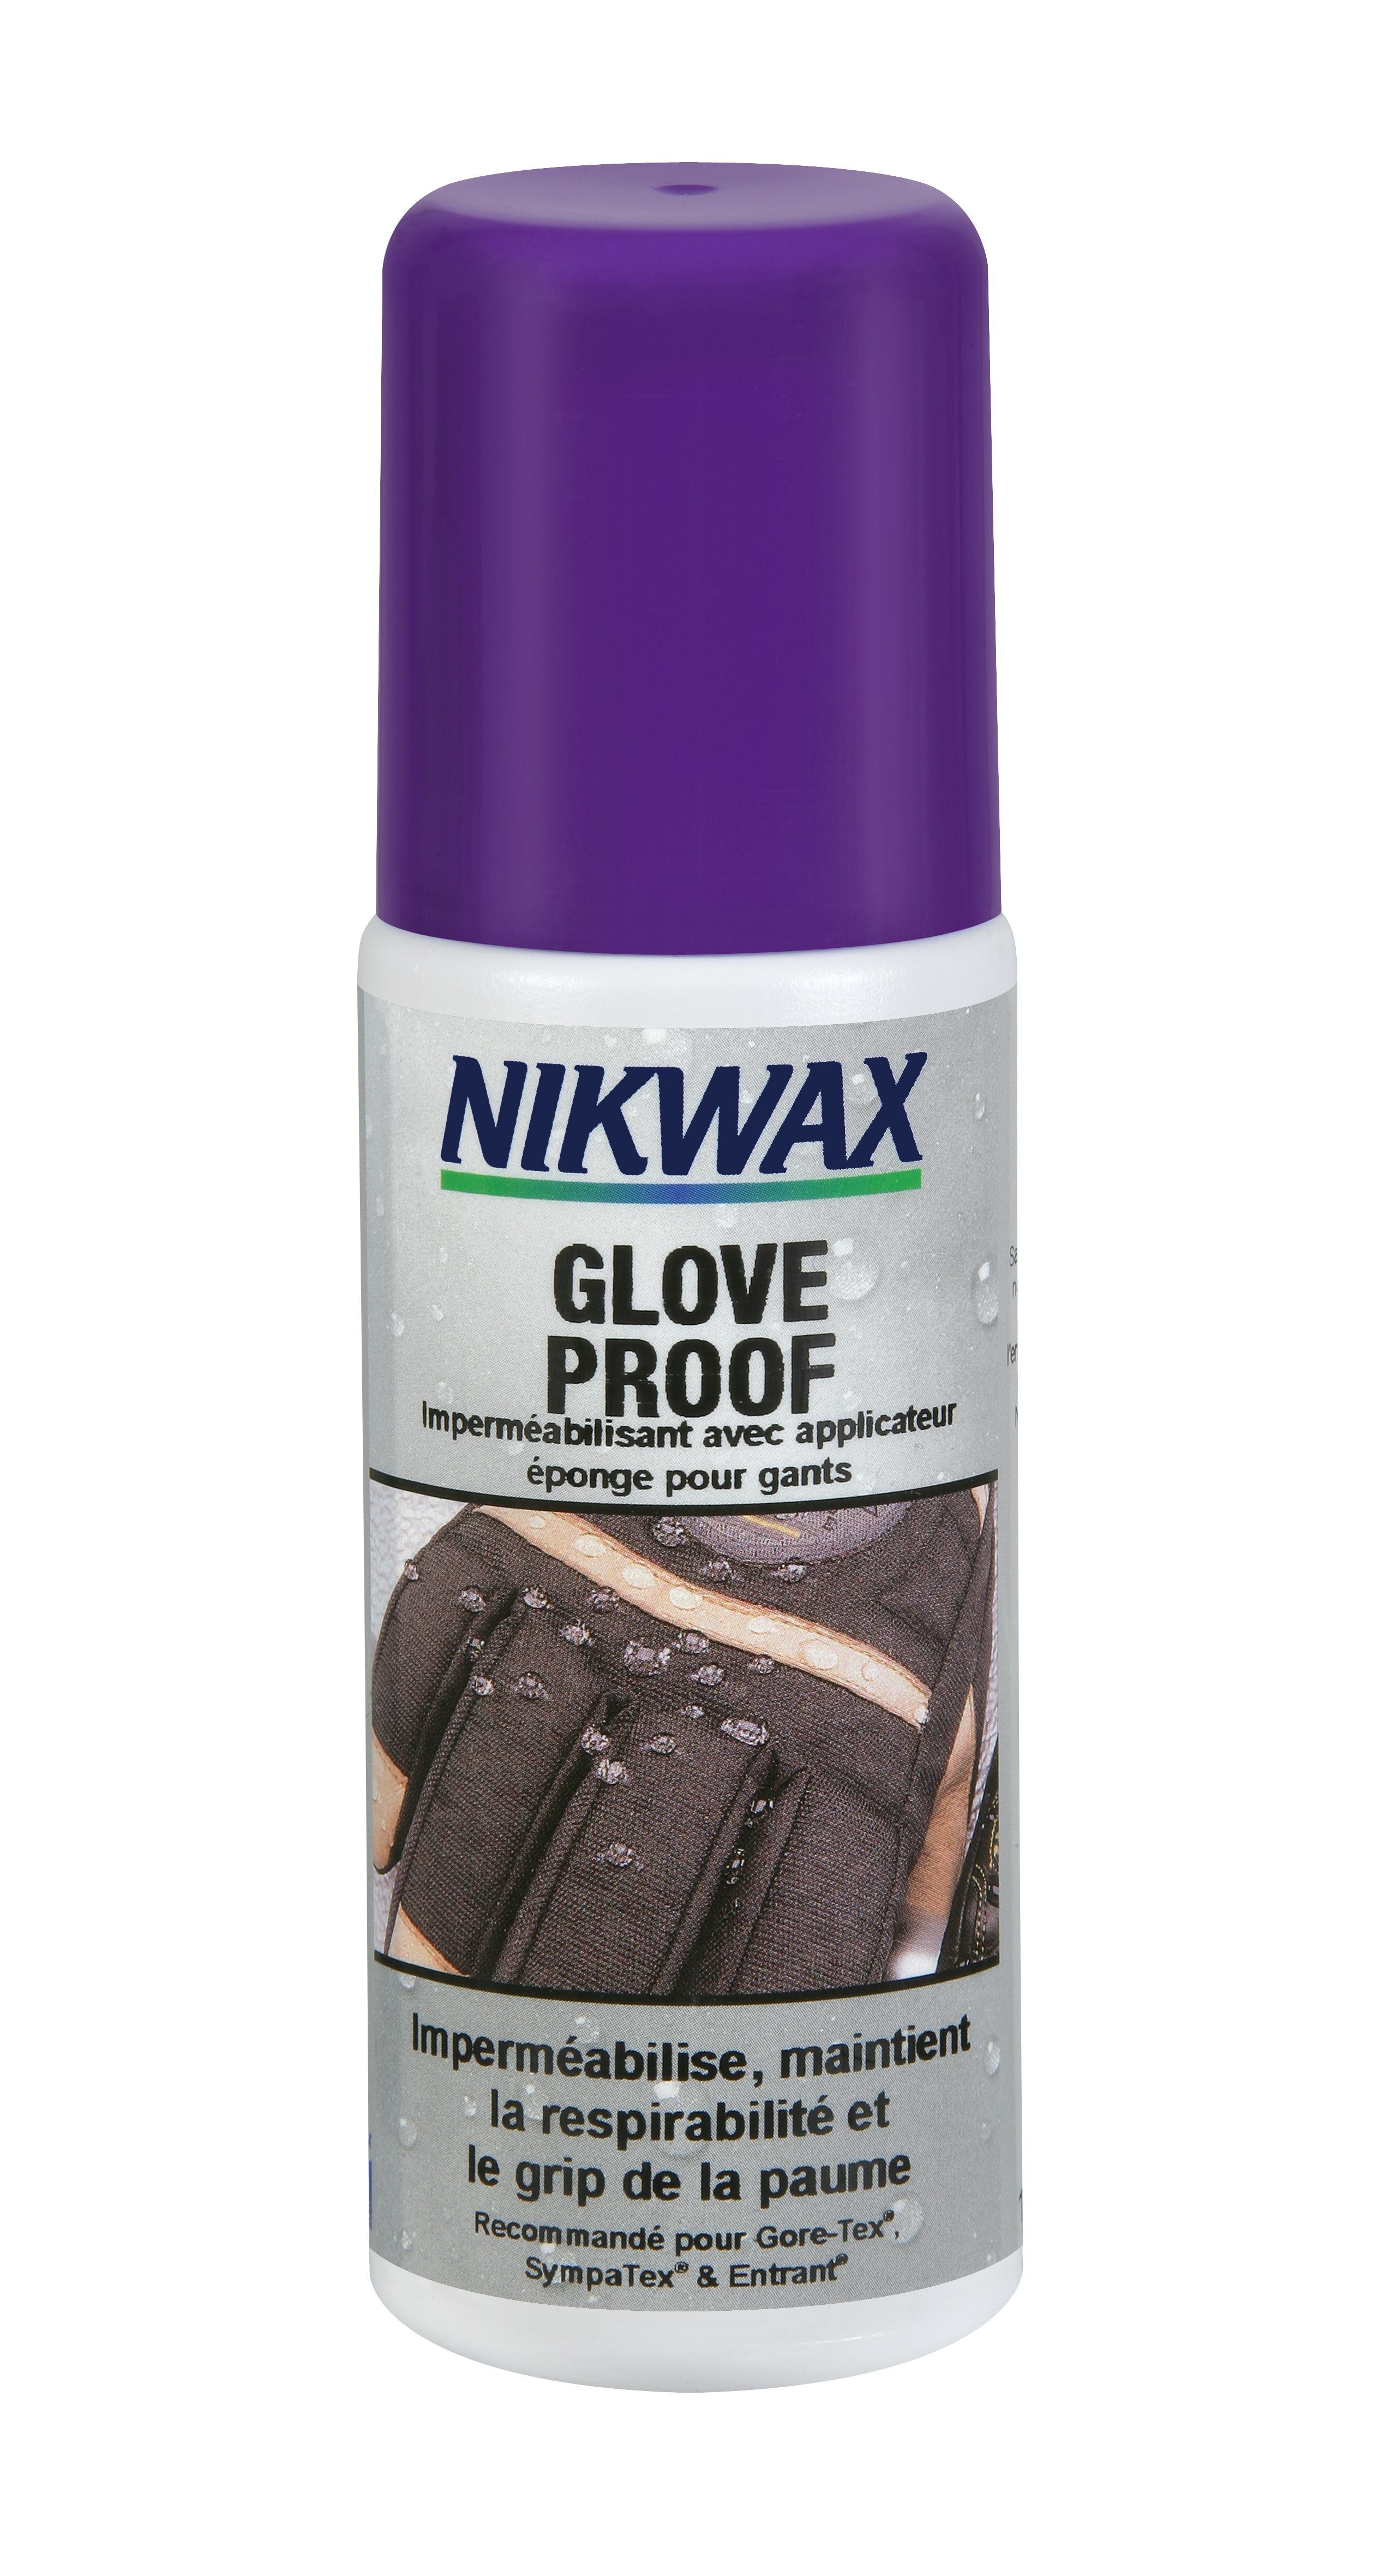 Nikwax Glove Proof pour gants - Imperméabilisant